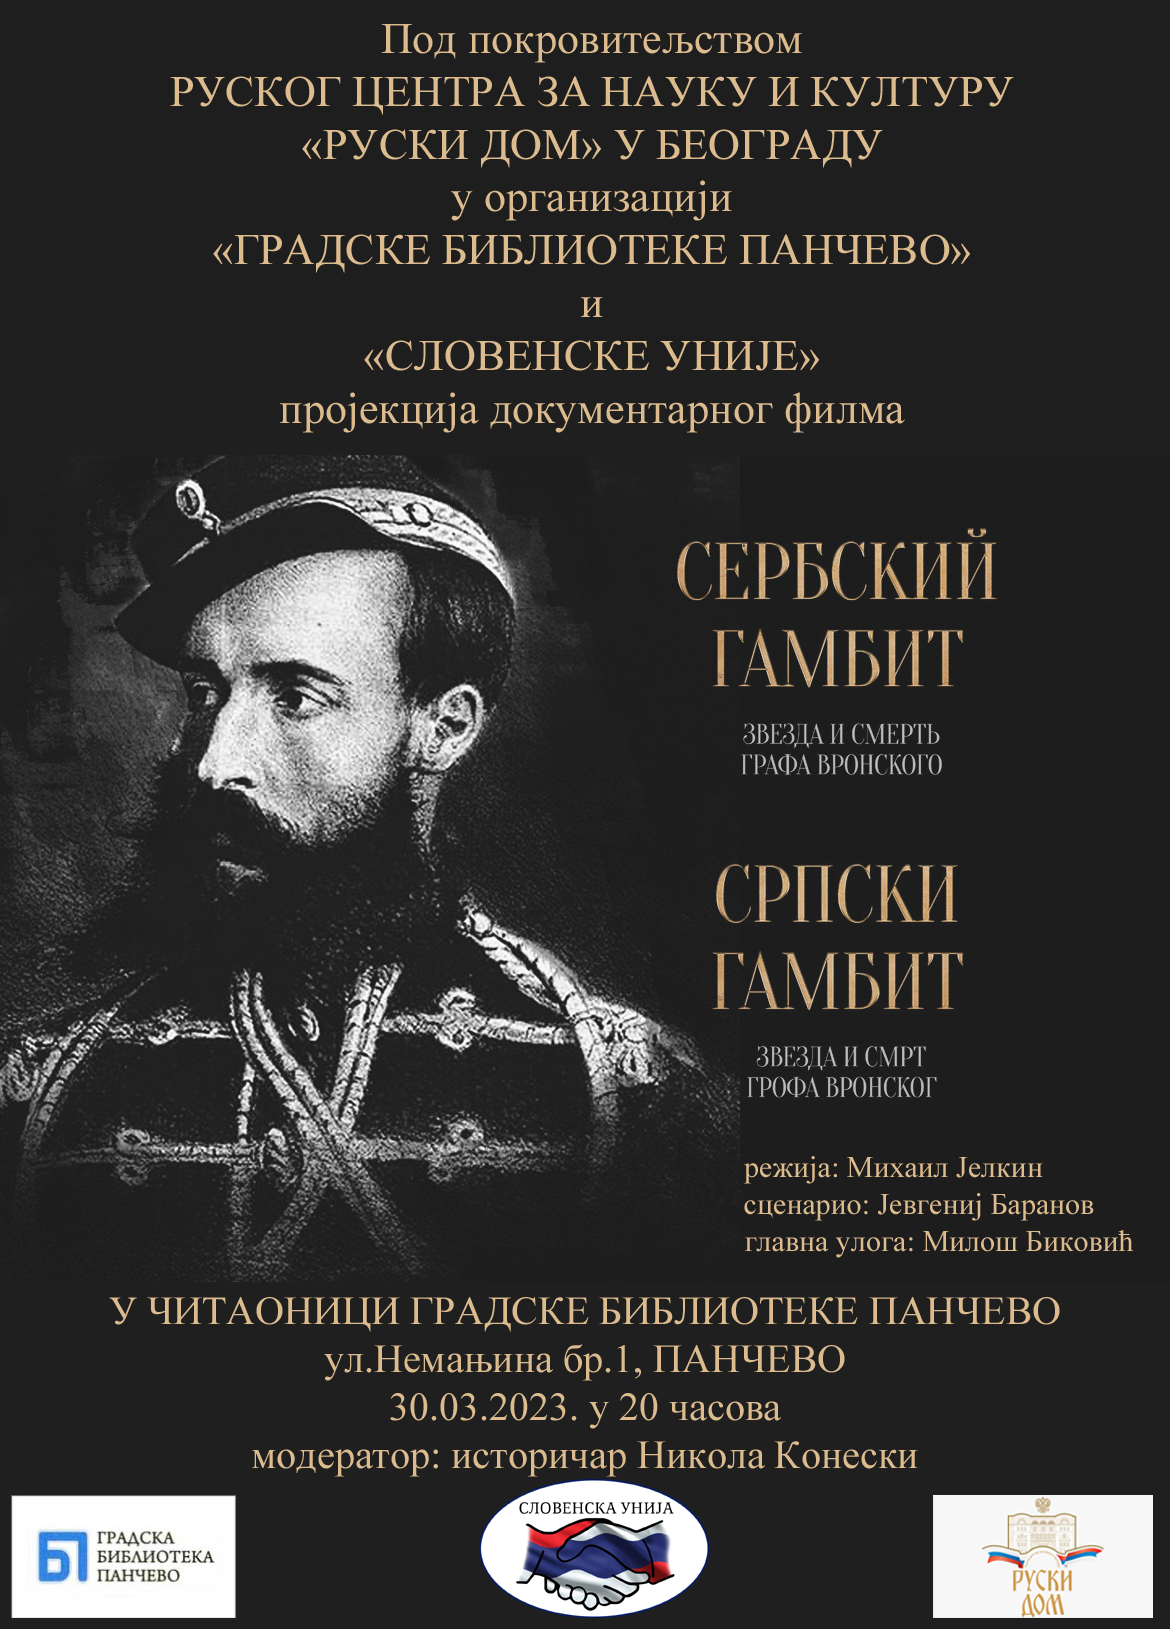 Gradska biblioteka: Projekcija dokumentarnog filma „Srpski gambit – zvezda i smrt grofa Vronskog“